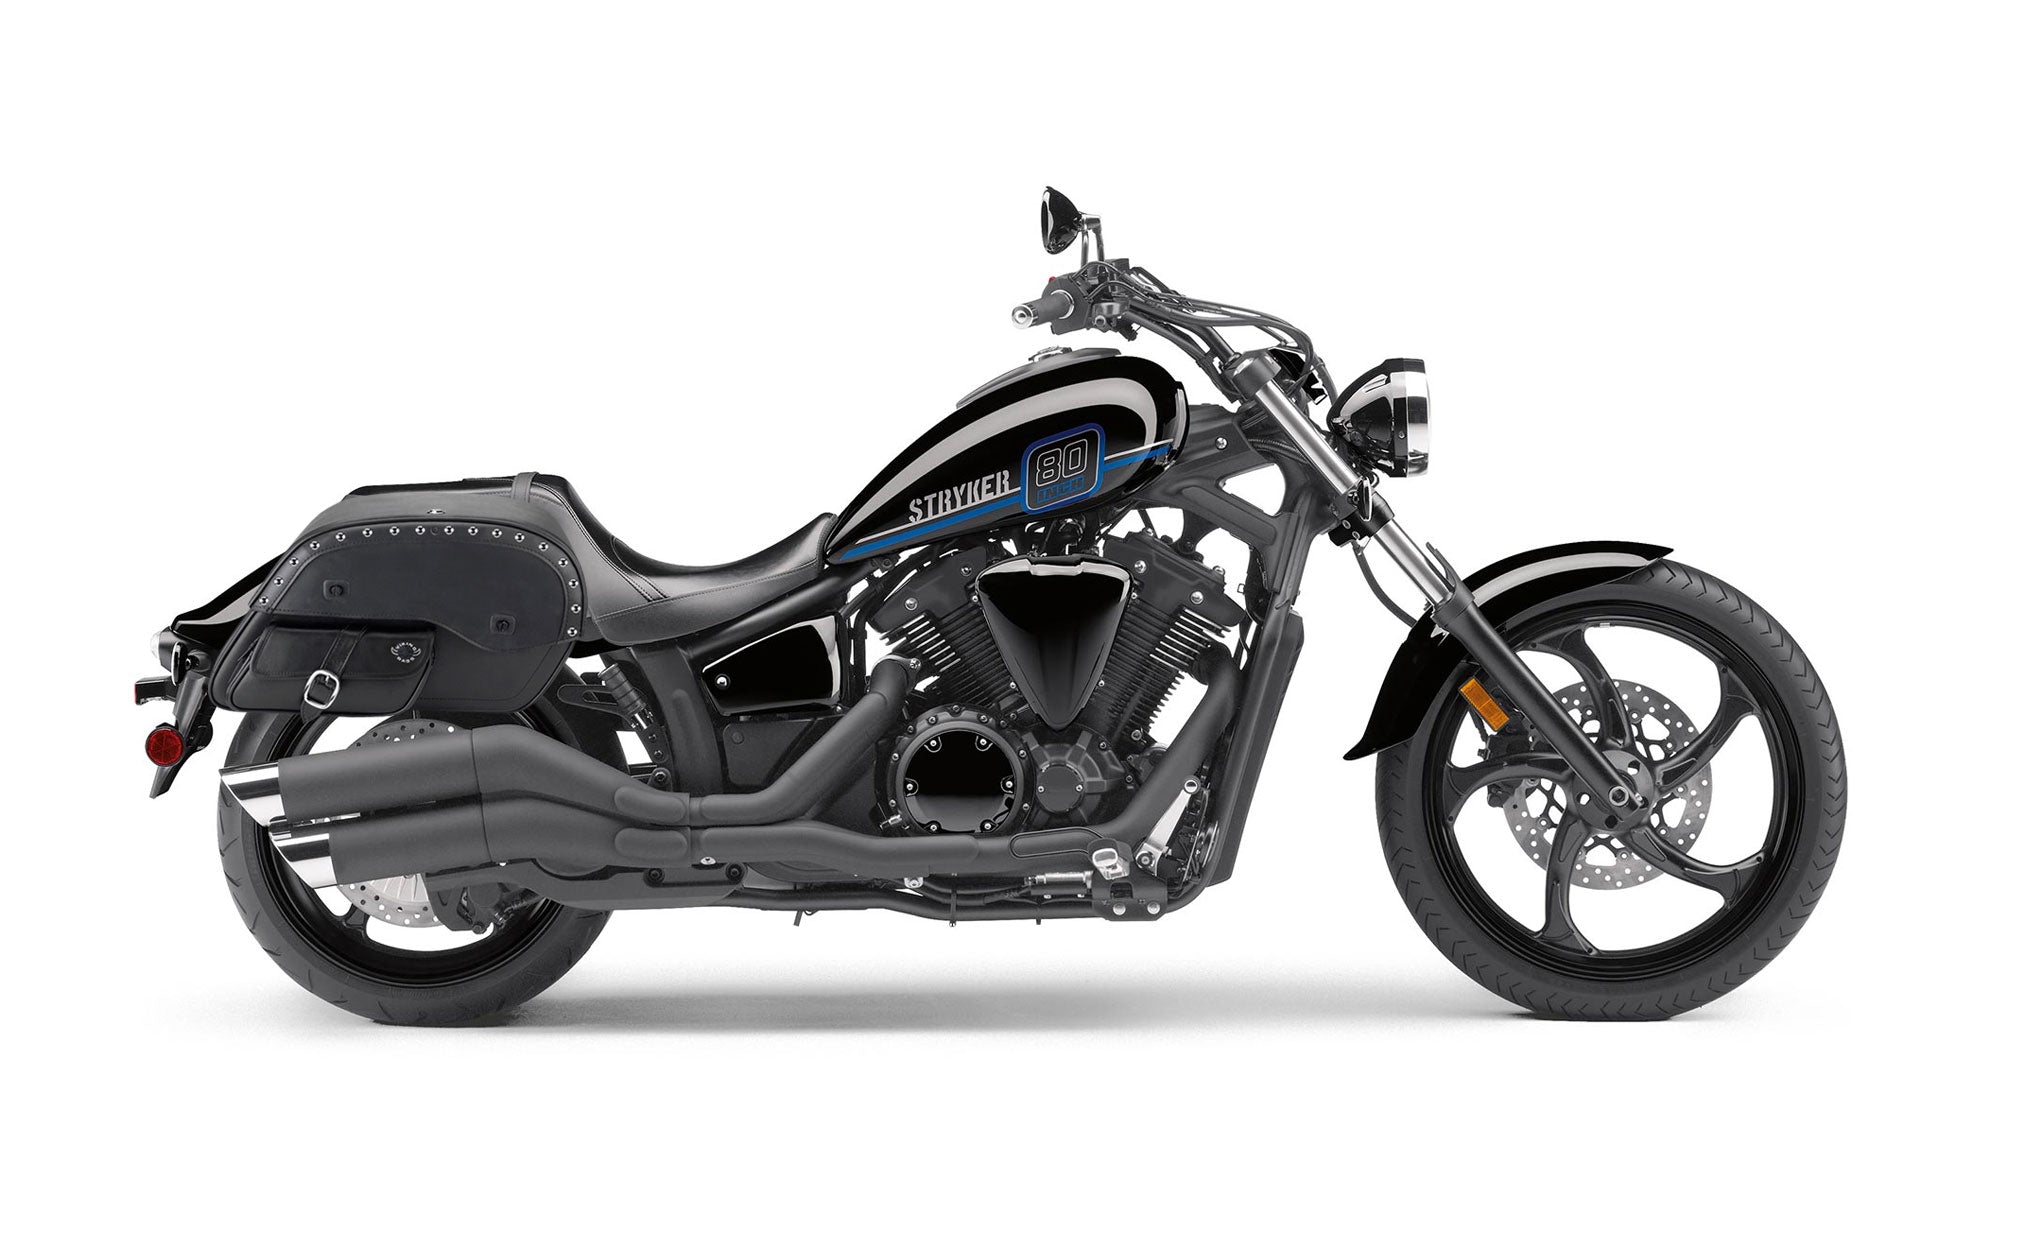 Viking Side Pocket Large Studded Yamaha Stryker Leather Motorcycle Saddlebags on Bike Photo @expand